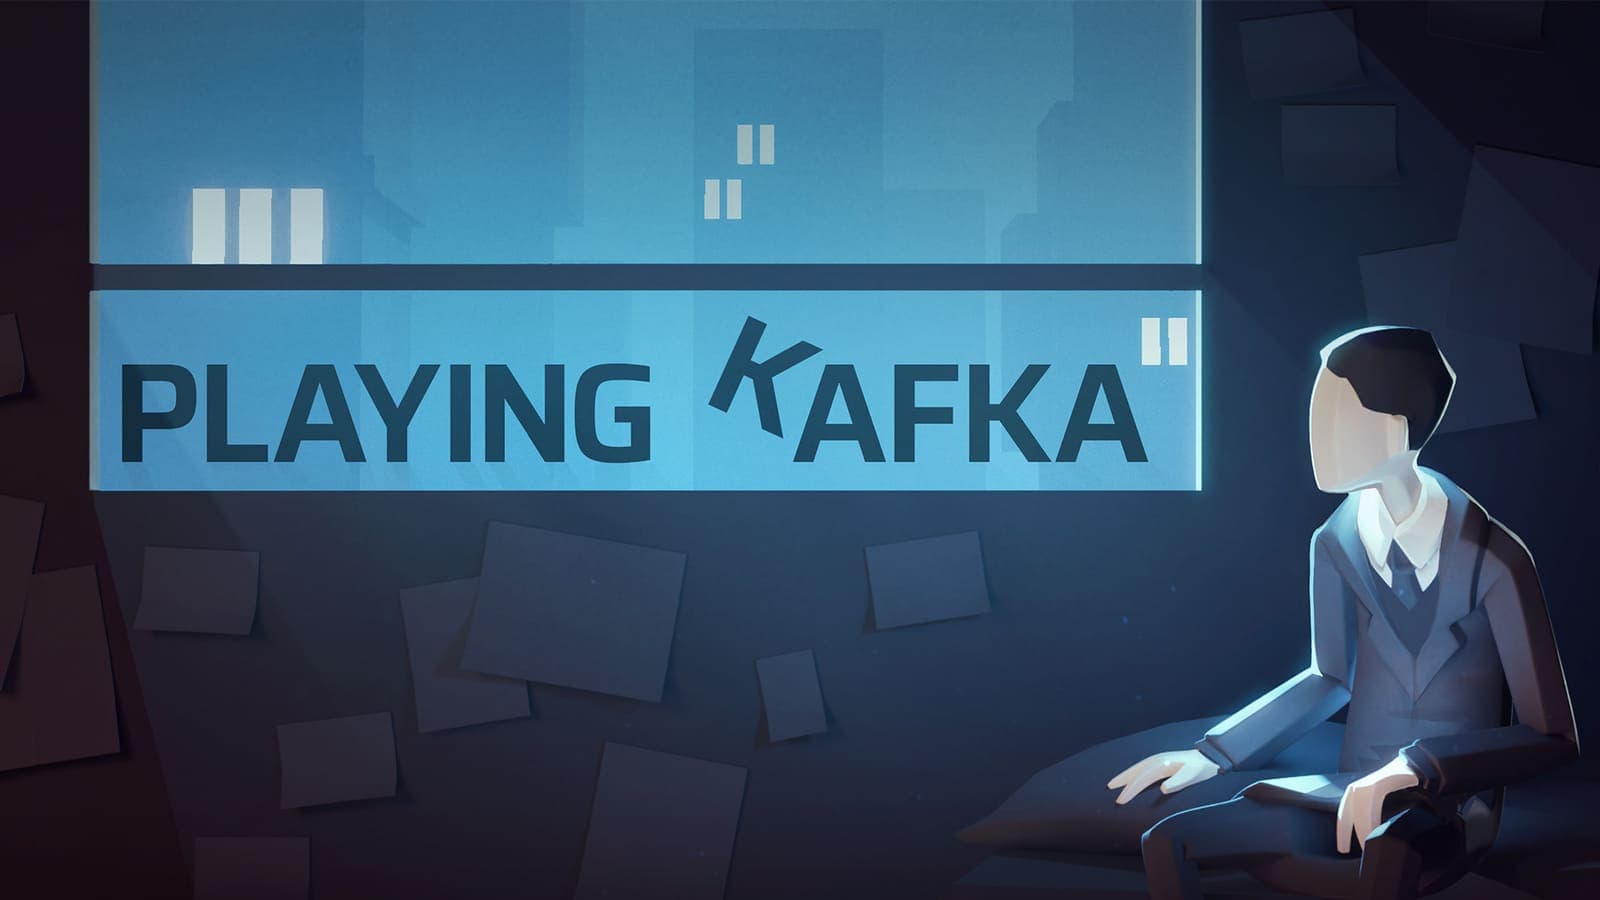 Пражская студия выпустила видеоигру Playing Kafka к столетию со дня смерти писателя